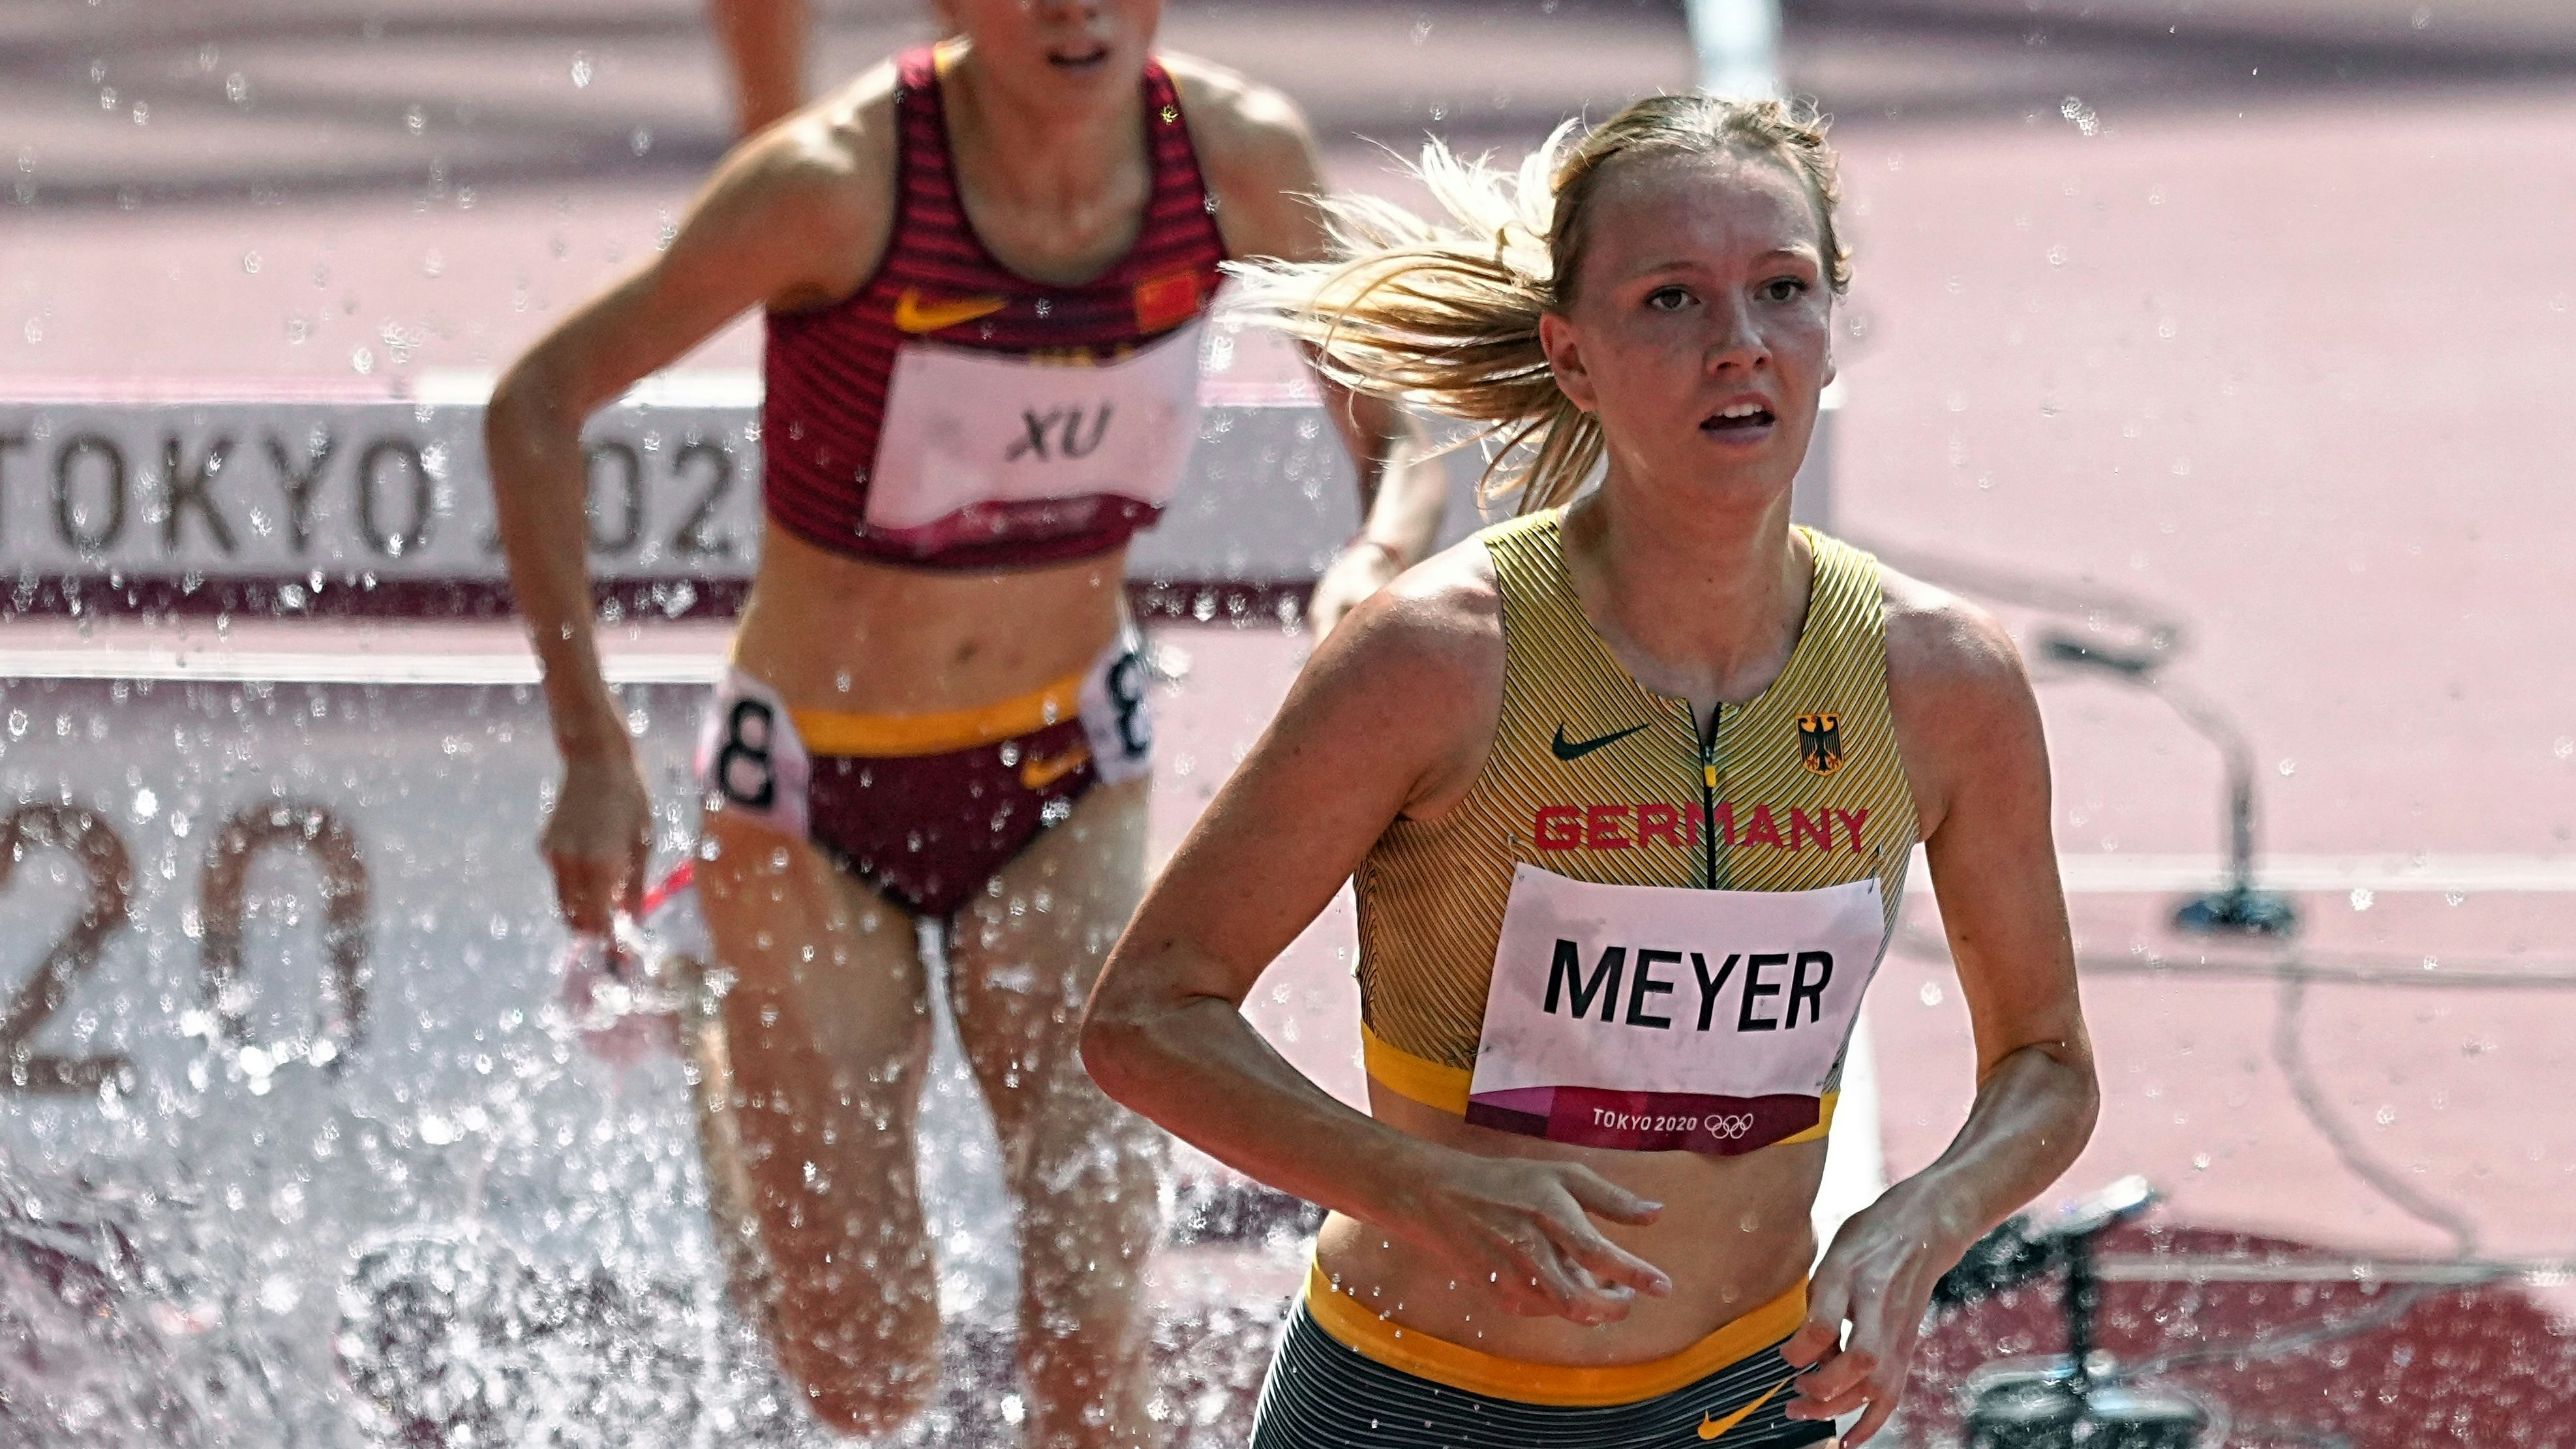 Als 7. ihres Vorlaufes hatte Lea Meyer über 3000 Meter Hindernis letztlich keine Chance auf einen Platz im Finale. Foto: dpa/Kappeler